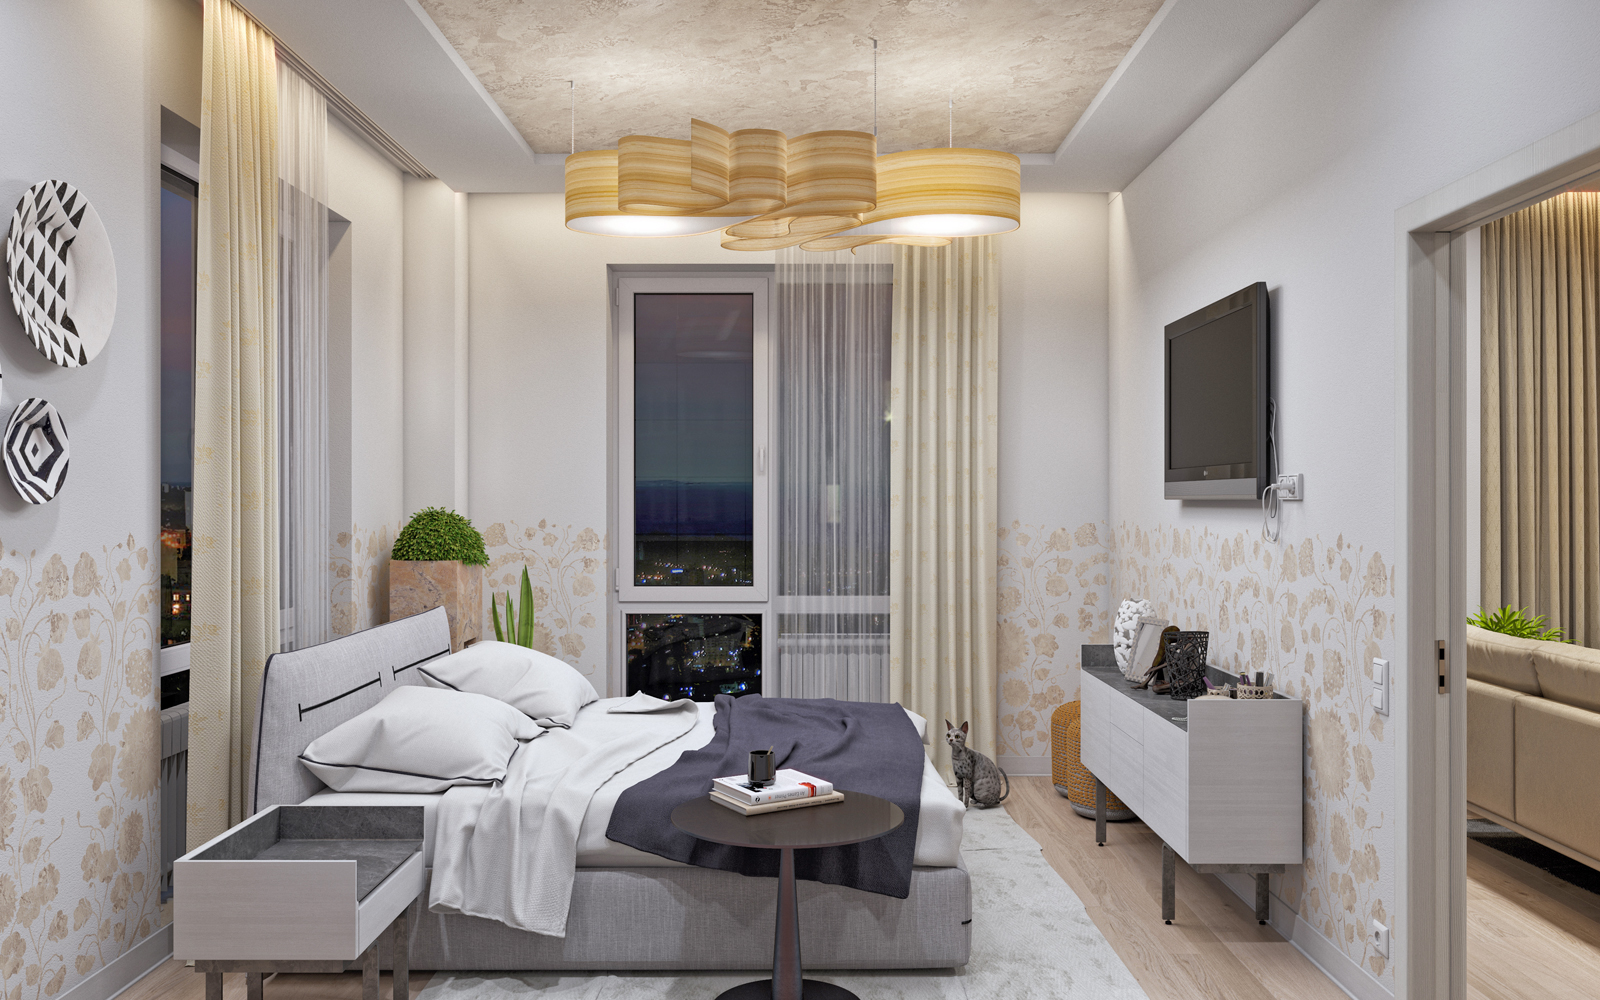 Konut kompleksi "Nobel" 2 yatak odalı daire. in 3d max corona render resim